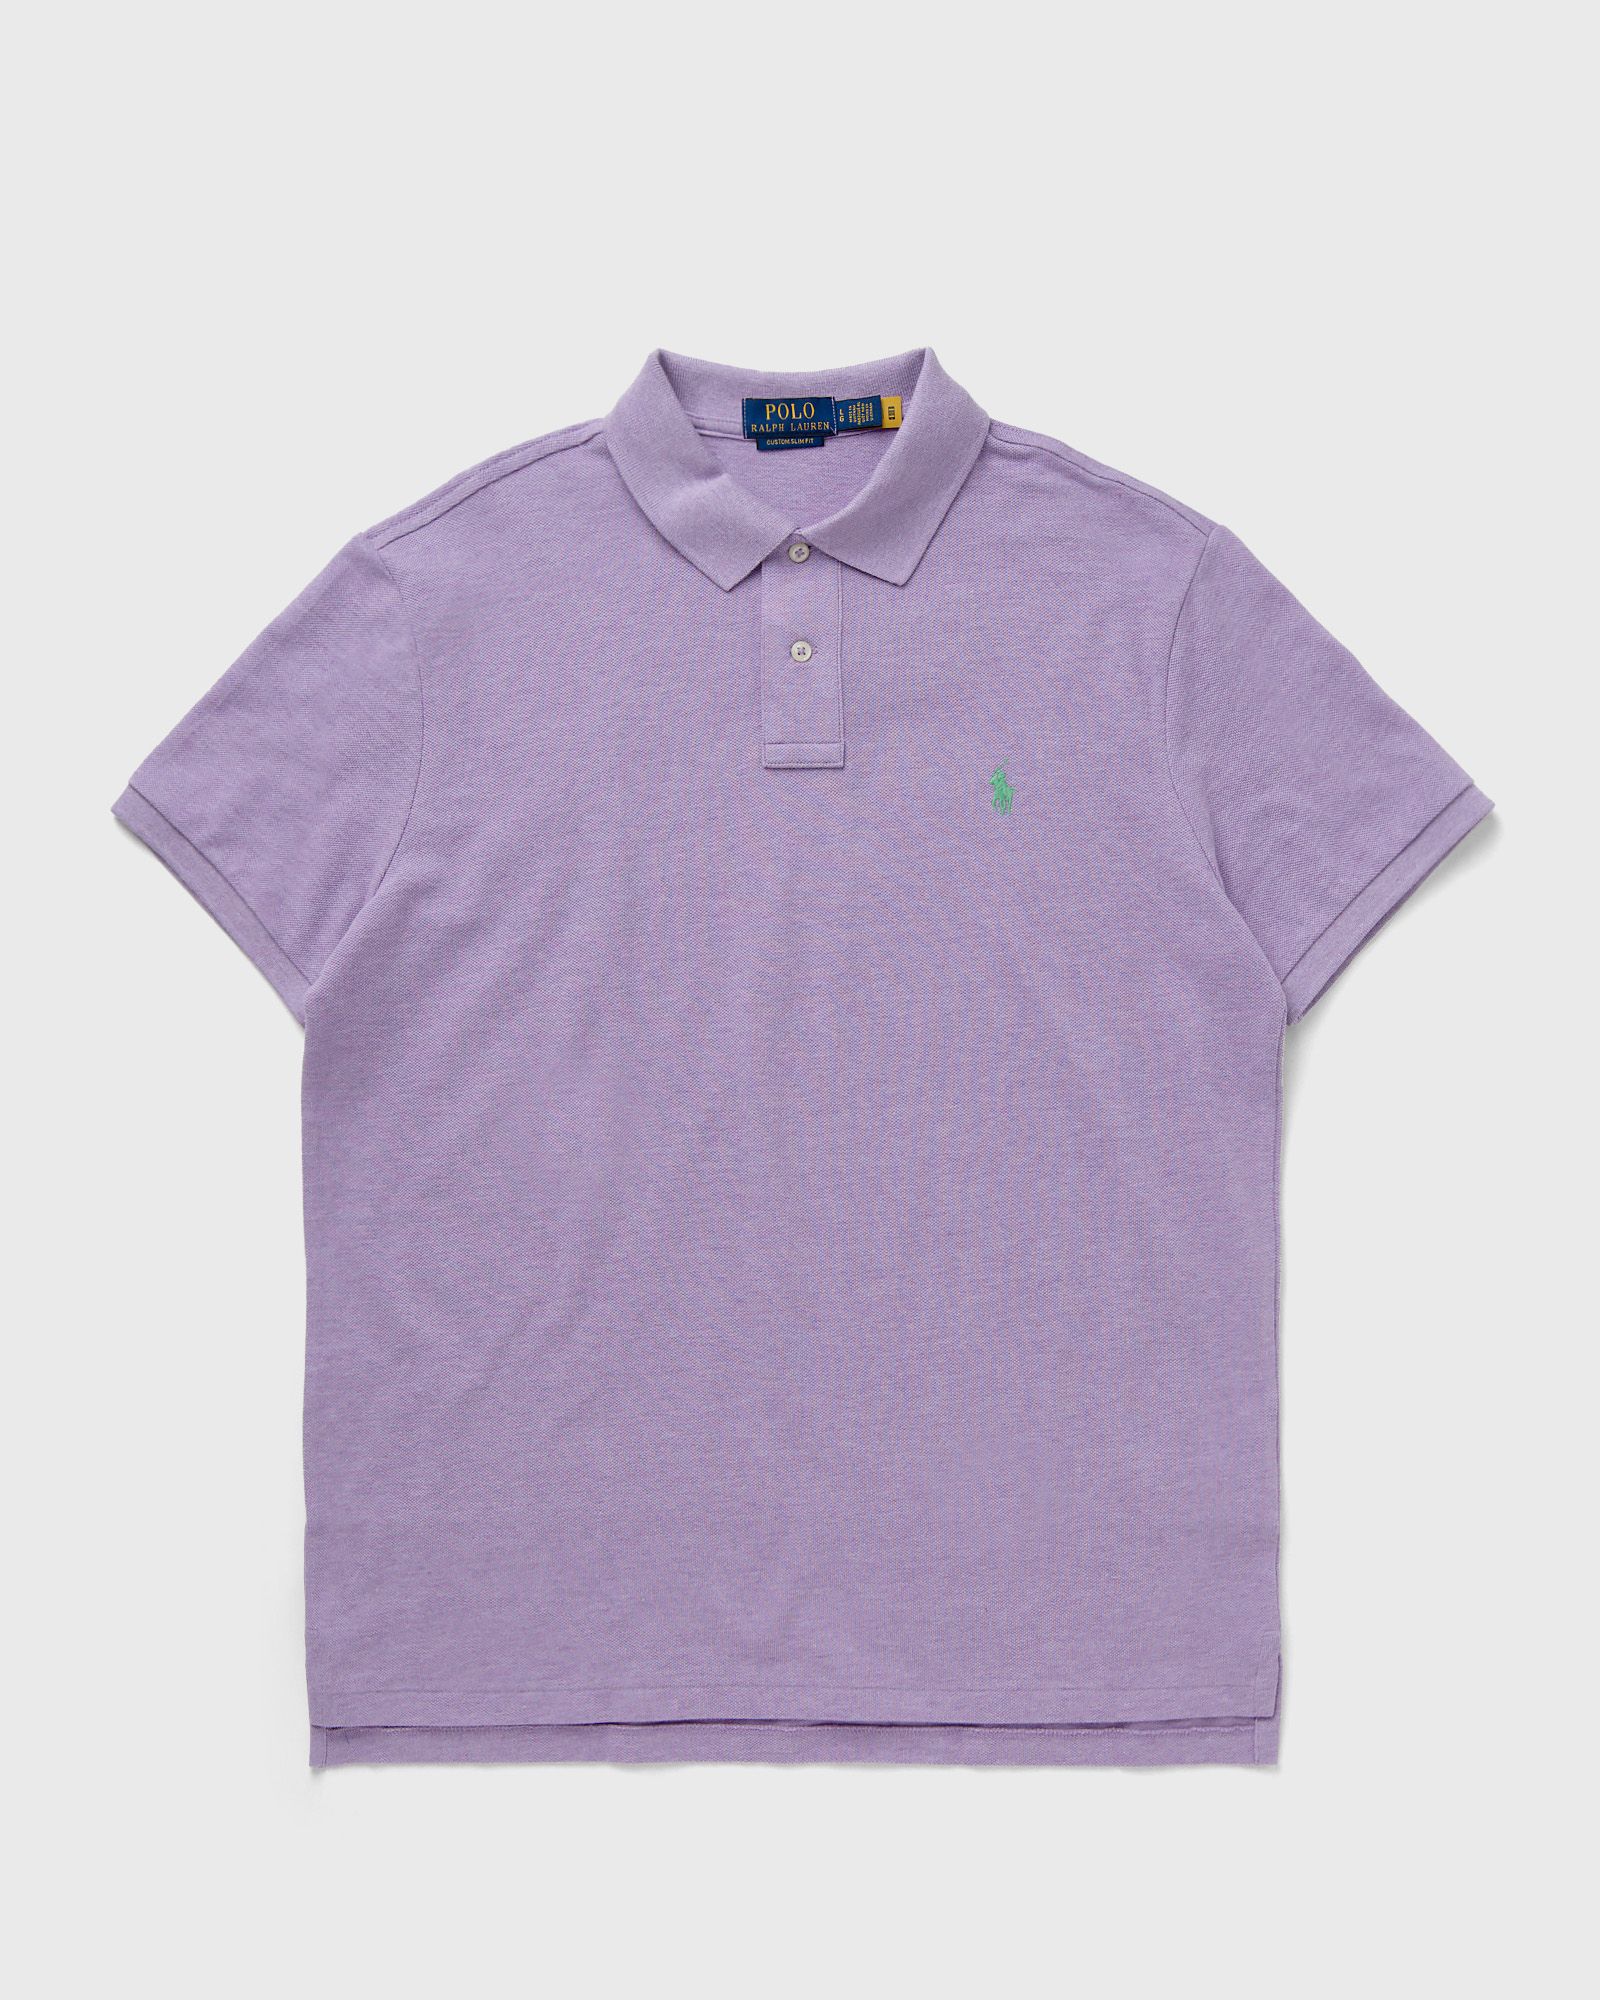 Polo Ralph Lauren - short sleeve-knit men polos purple in größe:xxl